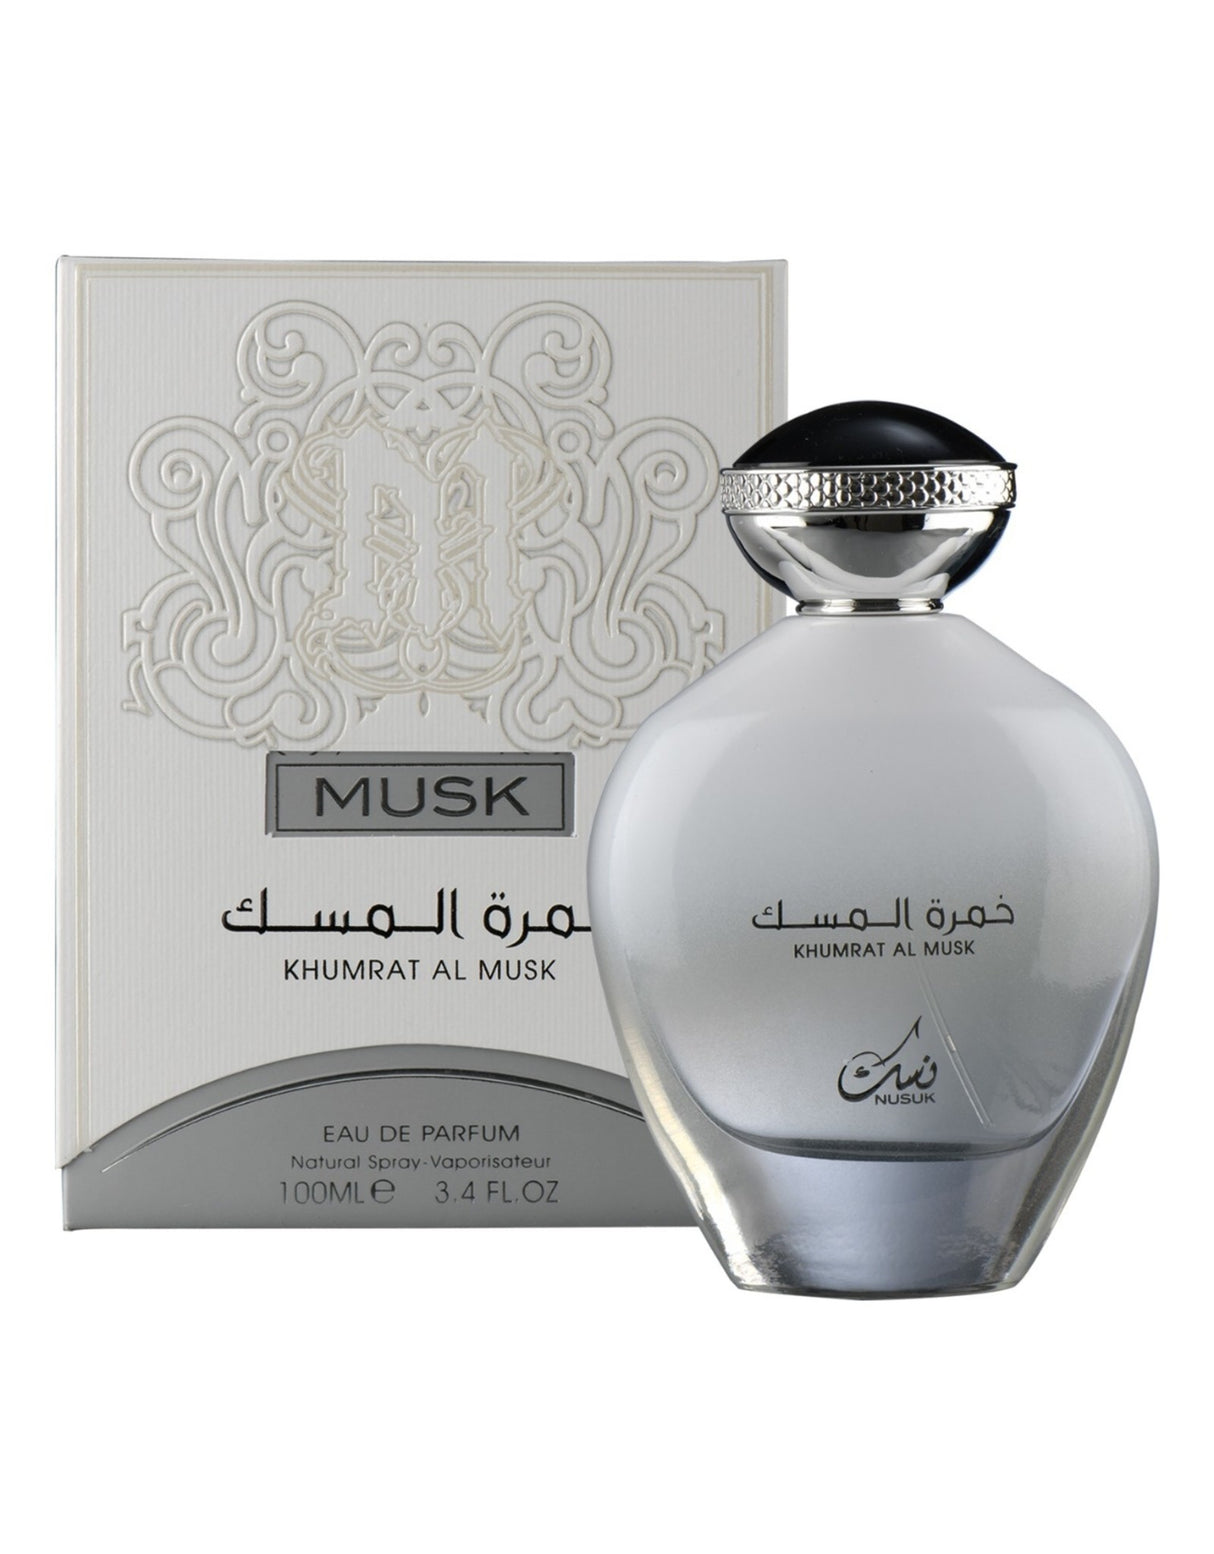 NUSUK Khumrat Al Musk Eau De Parfum